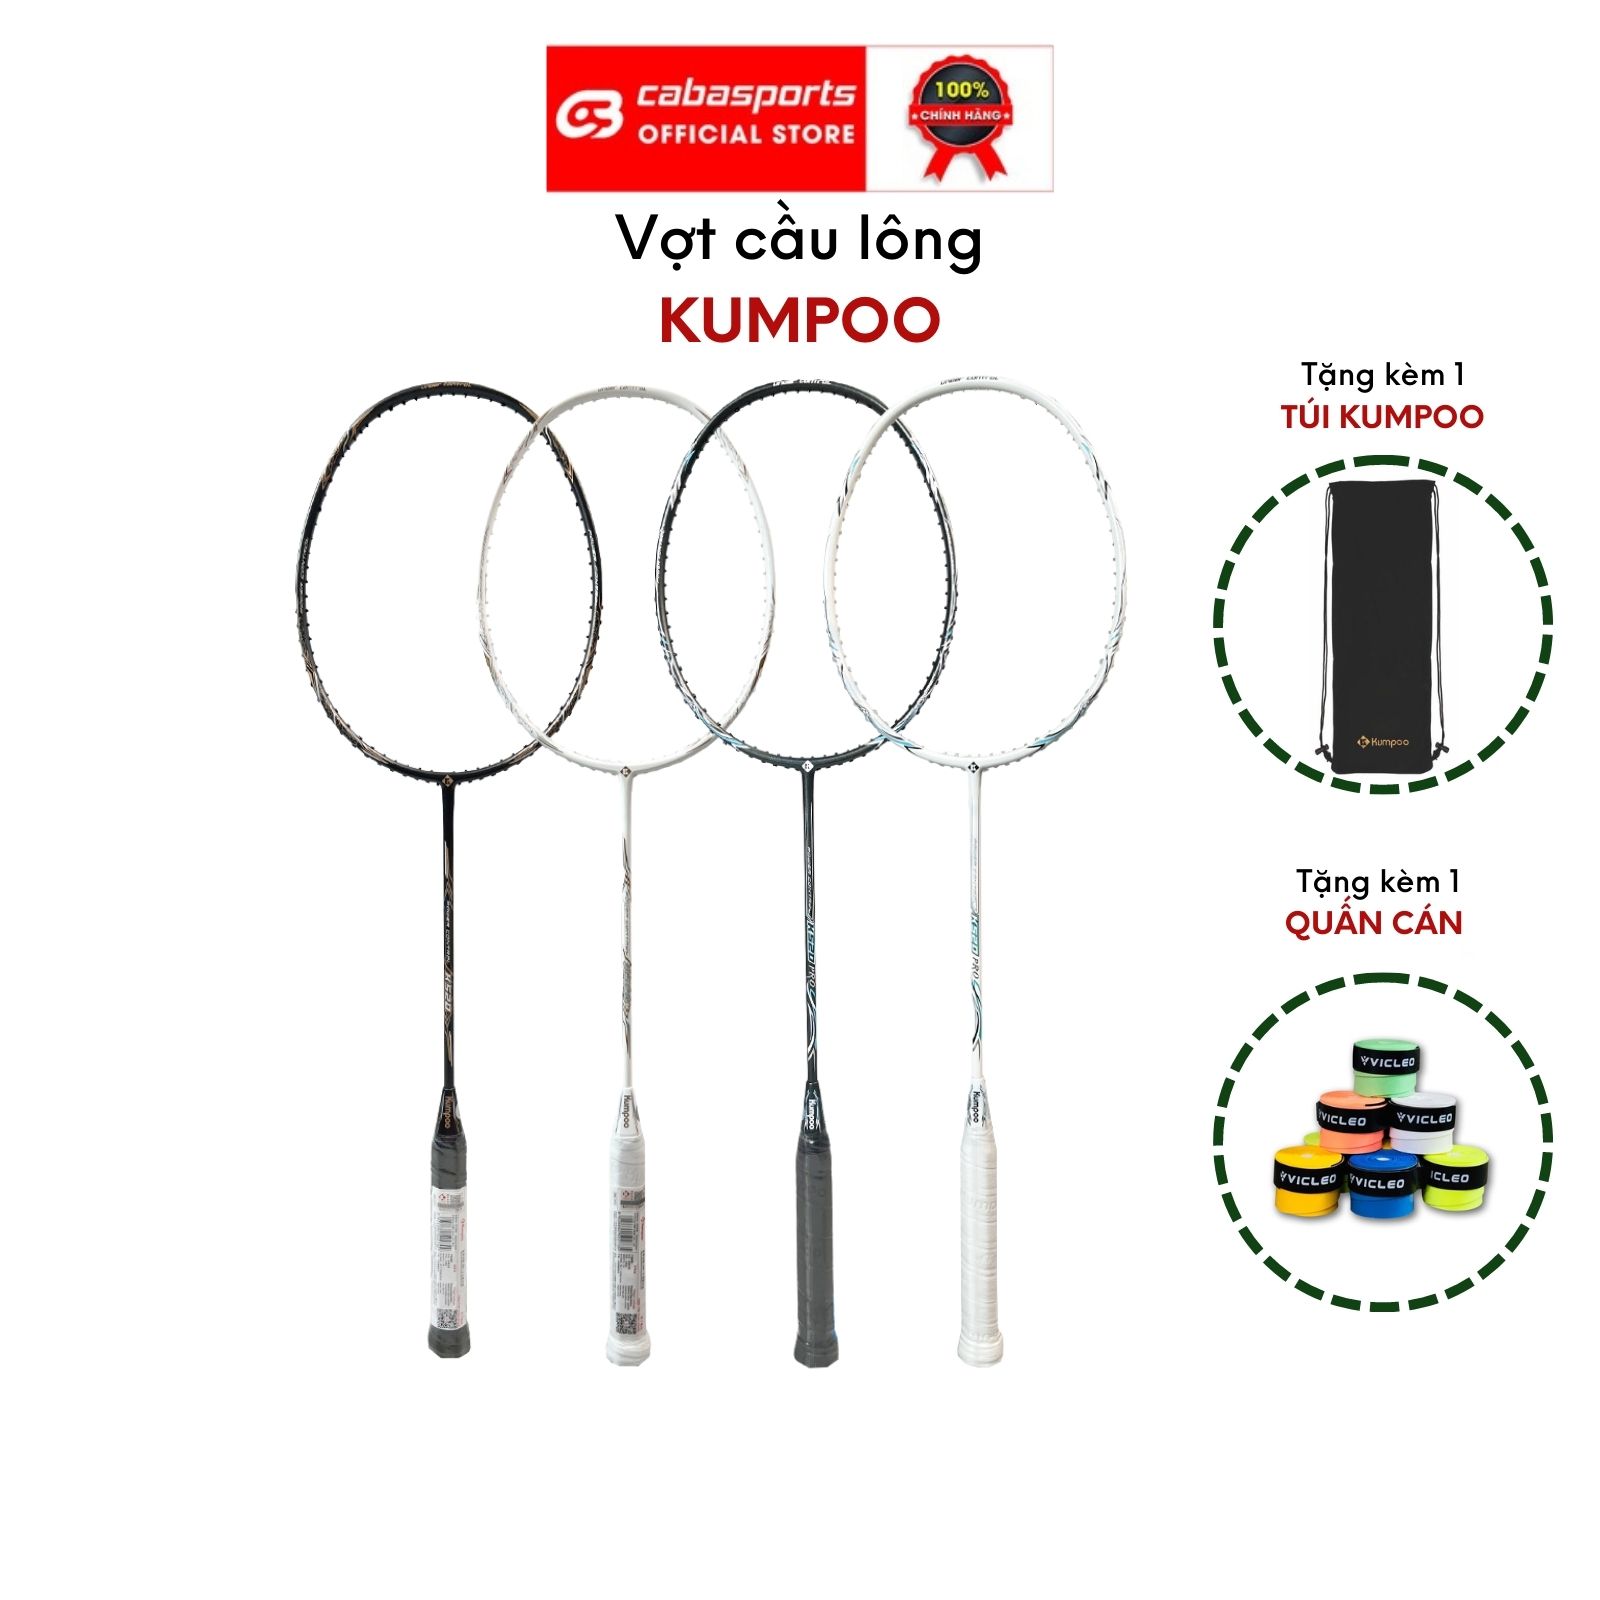 Vợt cầu lông Kumpoo Power Control 520 trắng đen siêu nhẹ chính hãng